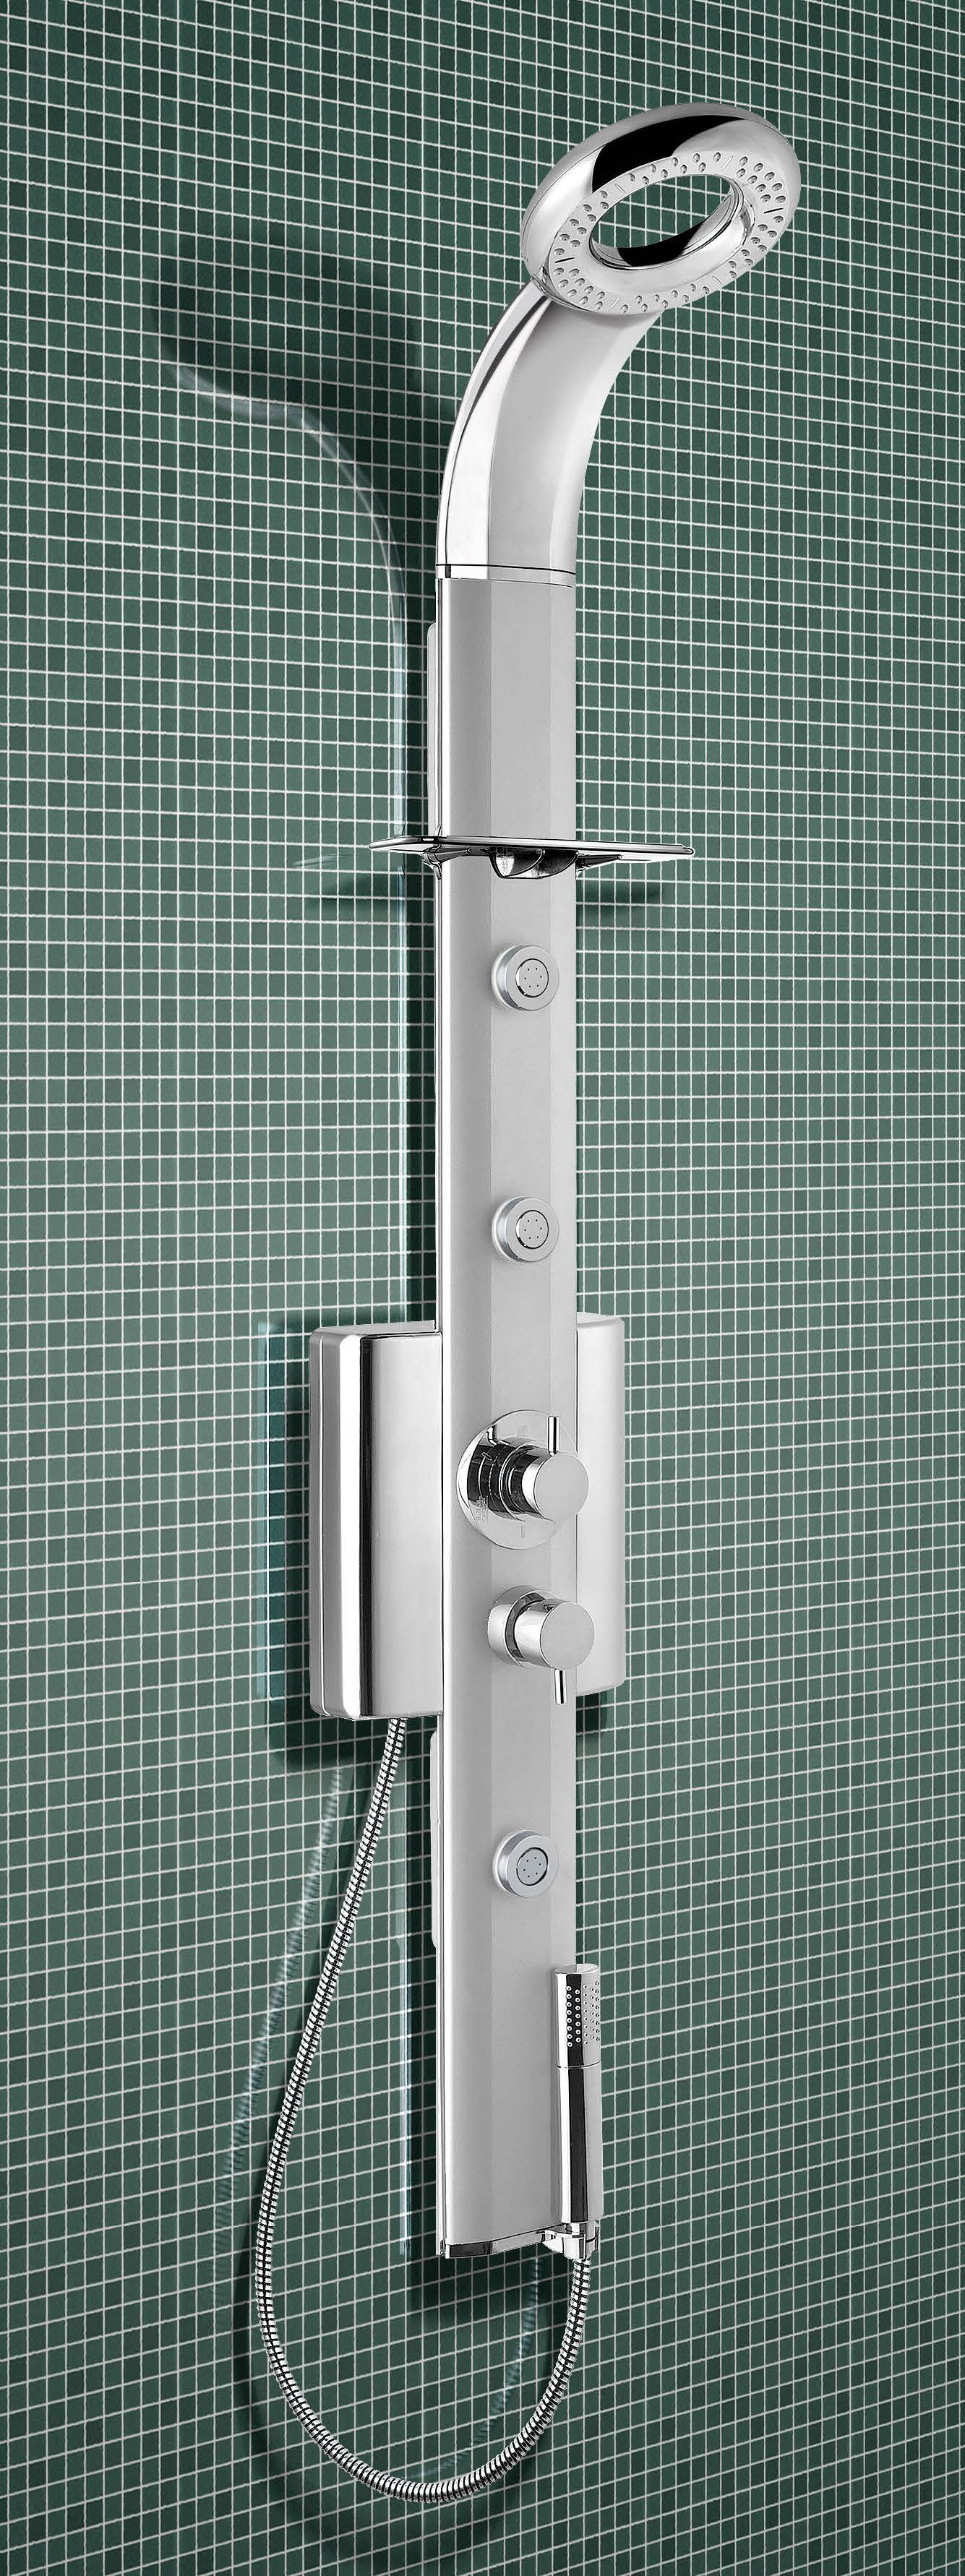 SFERA PLUS pannello doccia  in alluminio anodizzato e abs - Bagno Italiano